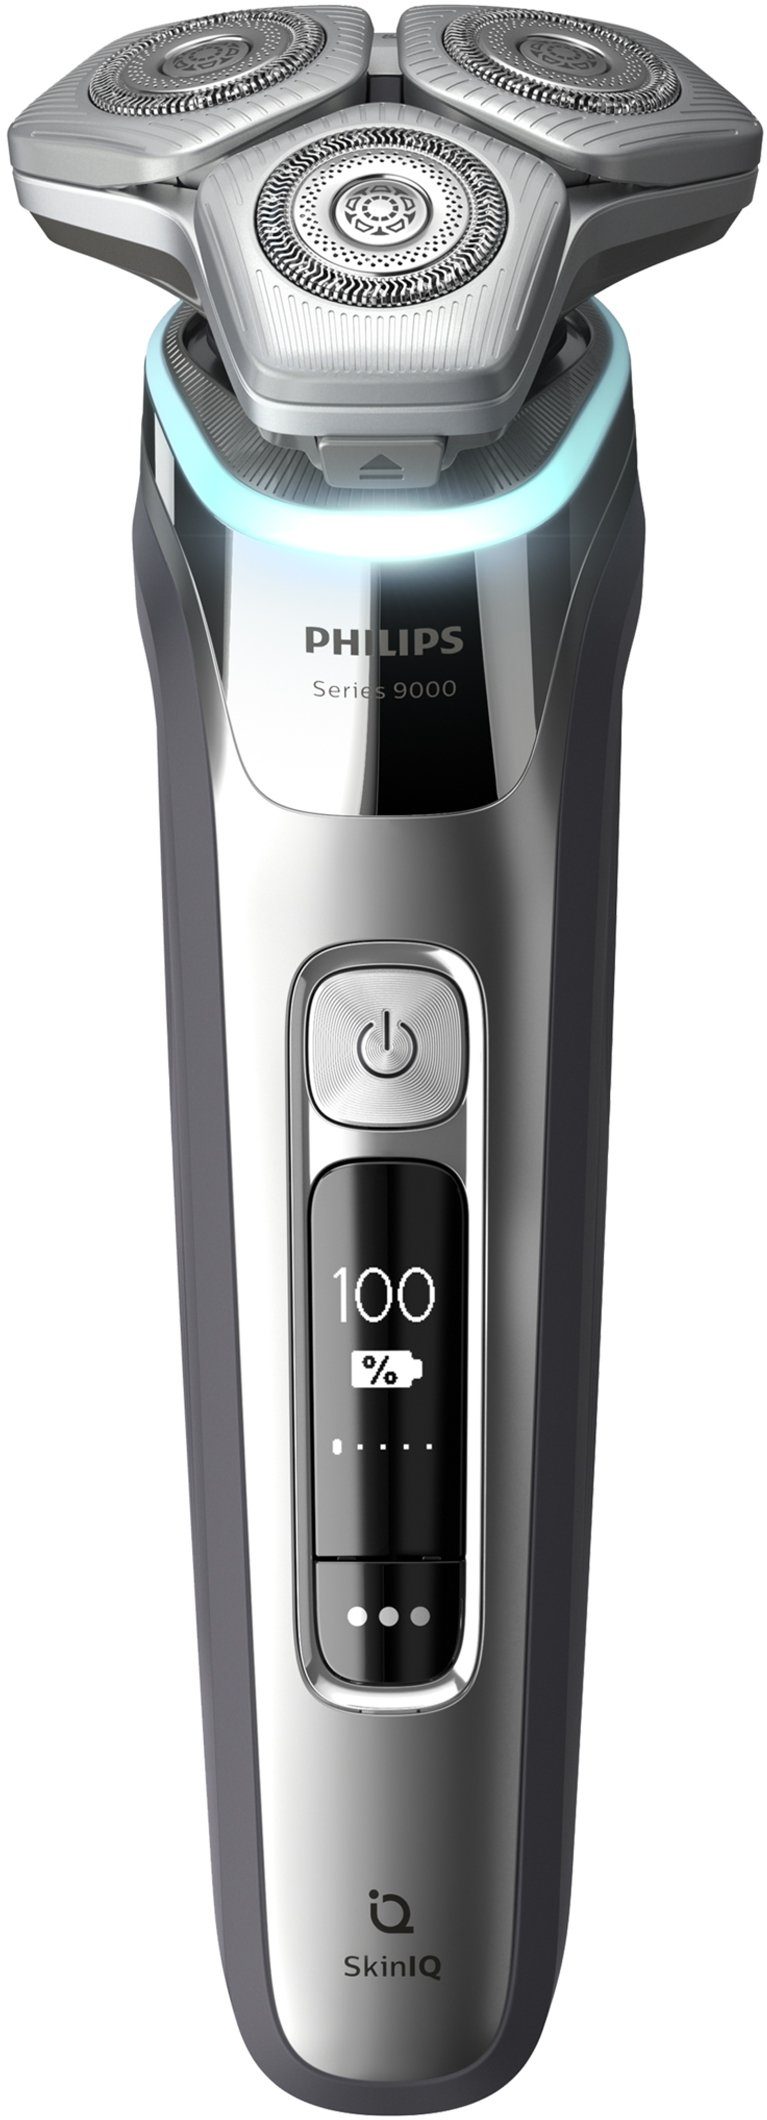 S9985/35, Etui inkl. Elektrorasierer IQ und 9000 mit Ladestation series Shaver Technologie, Skin Philips